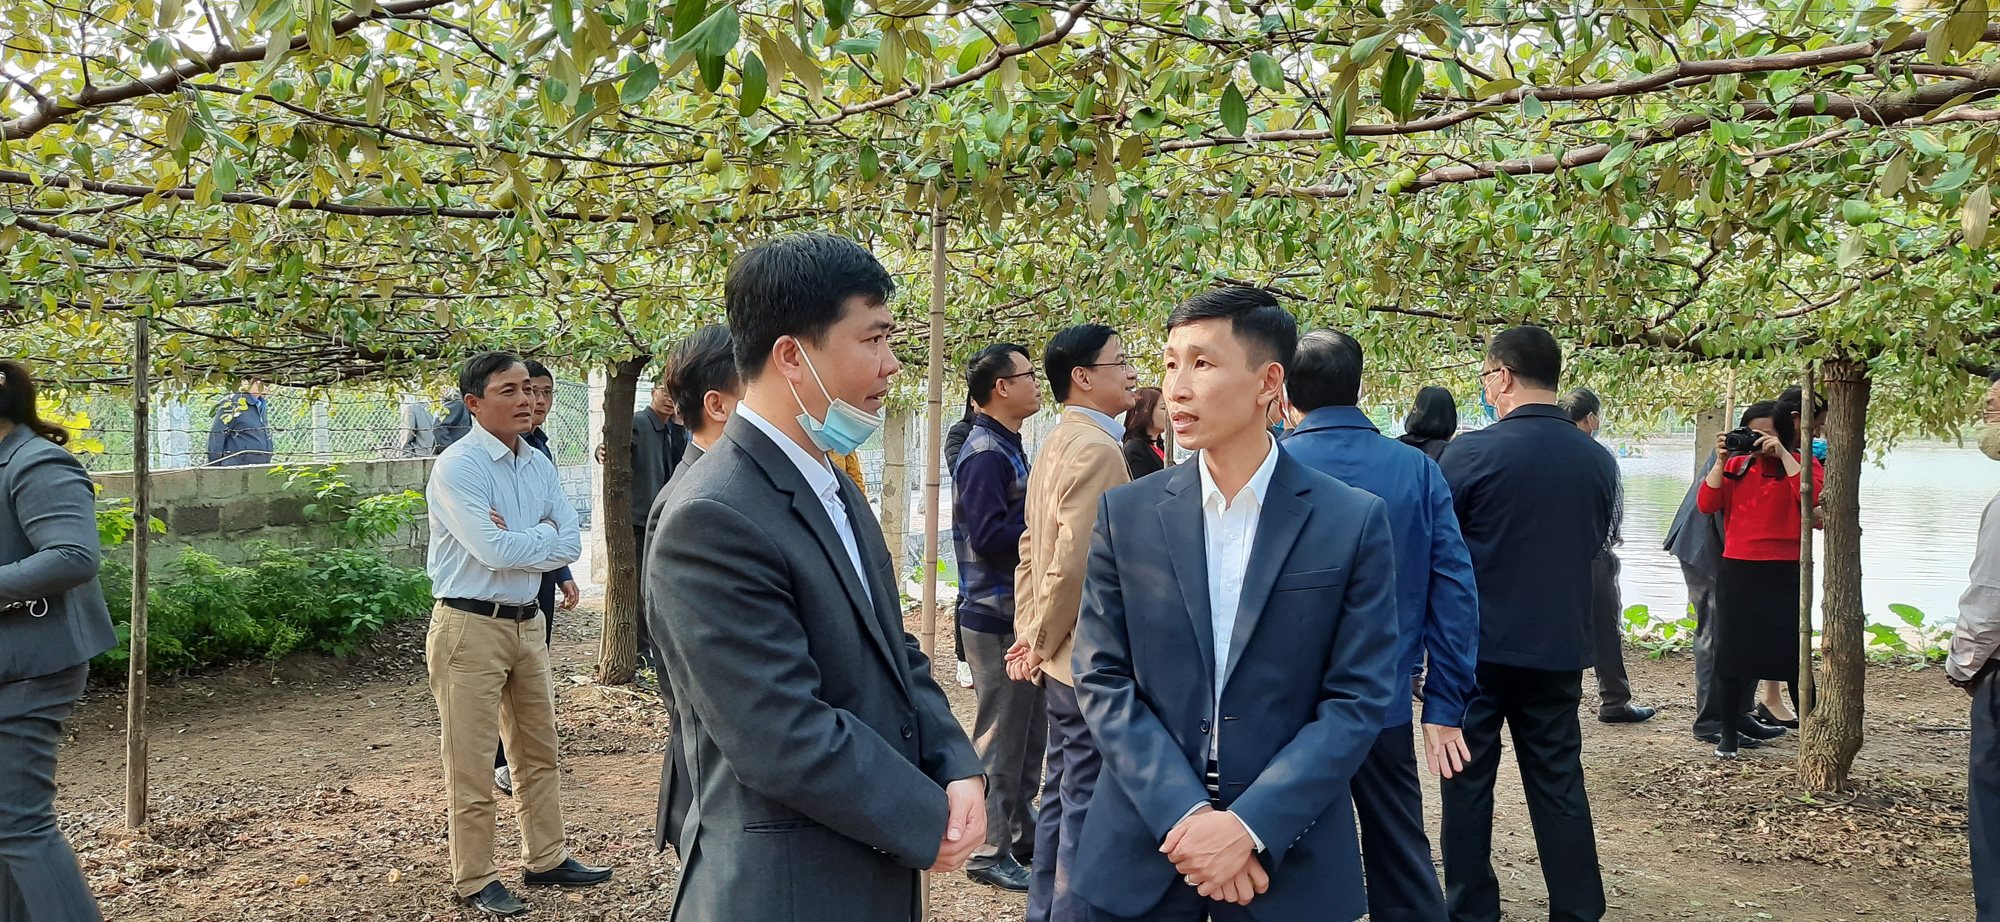 Hải Phòng: Trao tặng kinh phí hỗ trợ xây nhà cho hộ nghèo, thăm vườn trồng táo giàn ở quận Đồ Sơn - Ảnh 4.